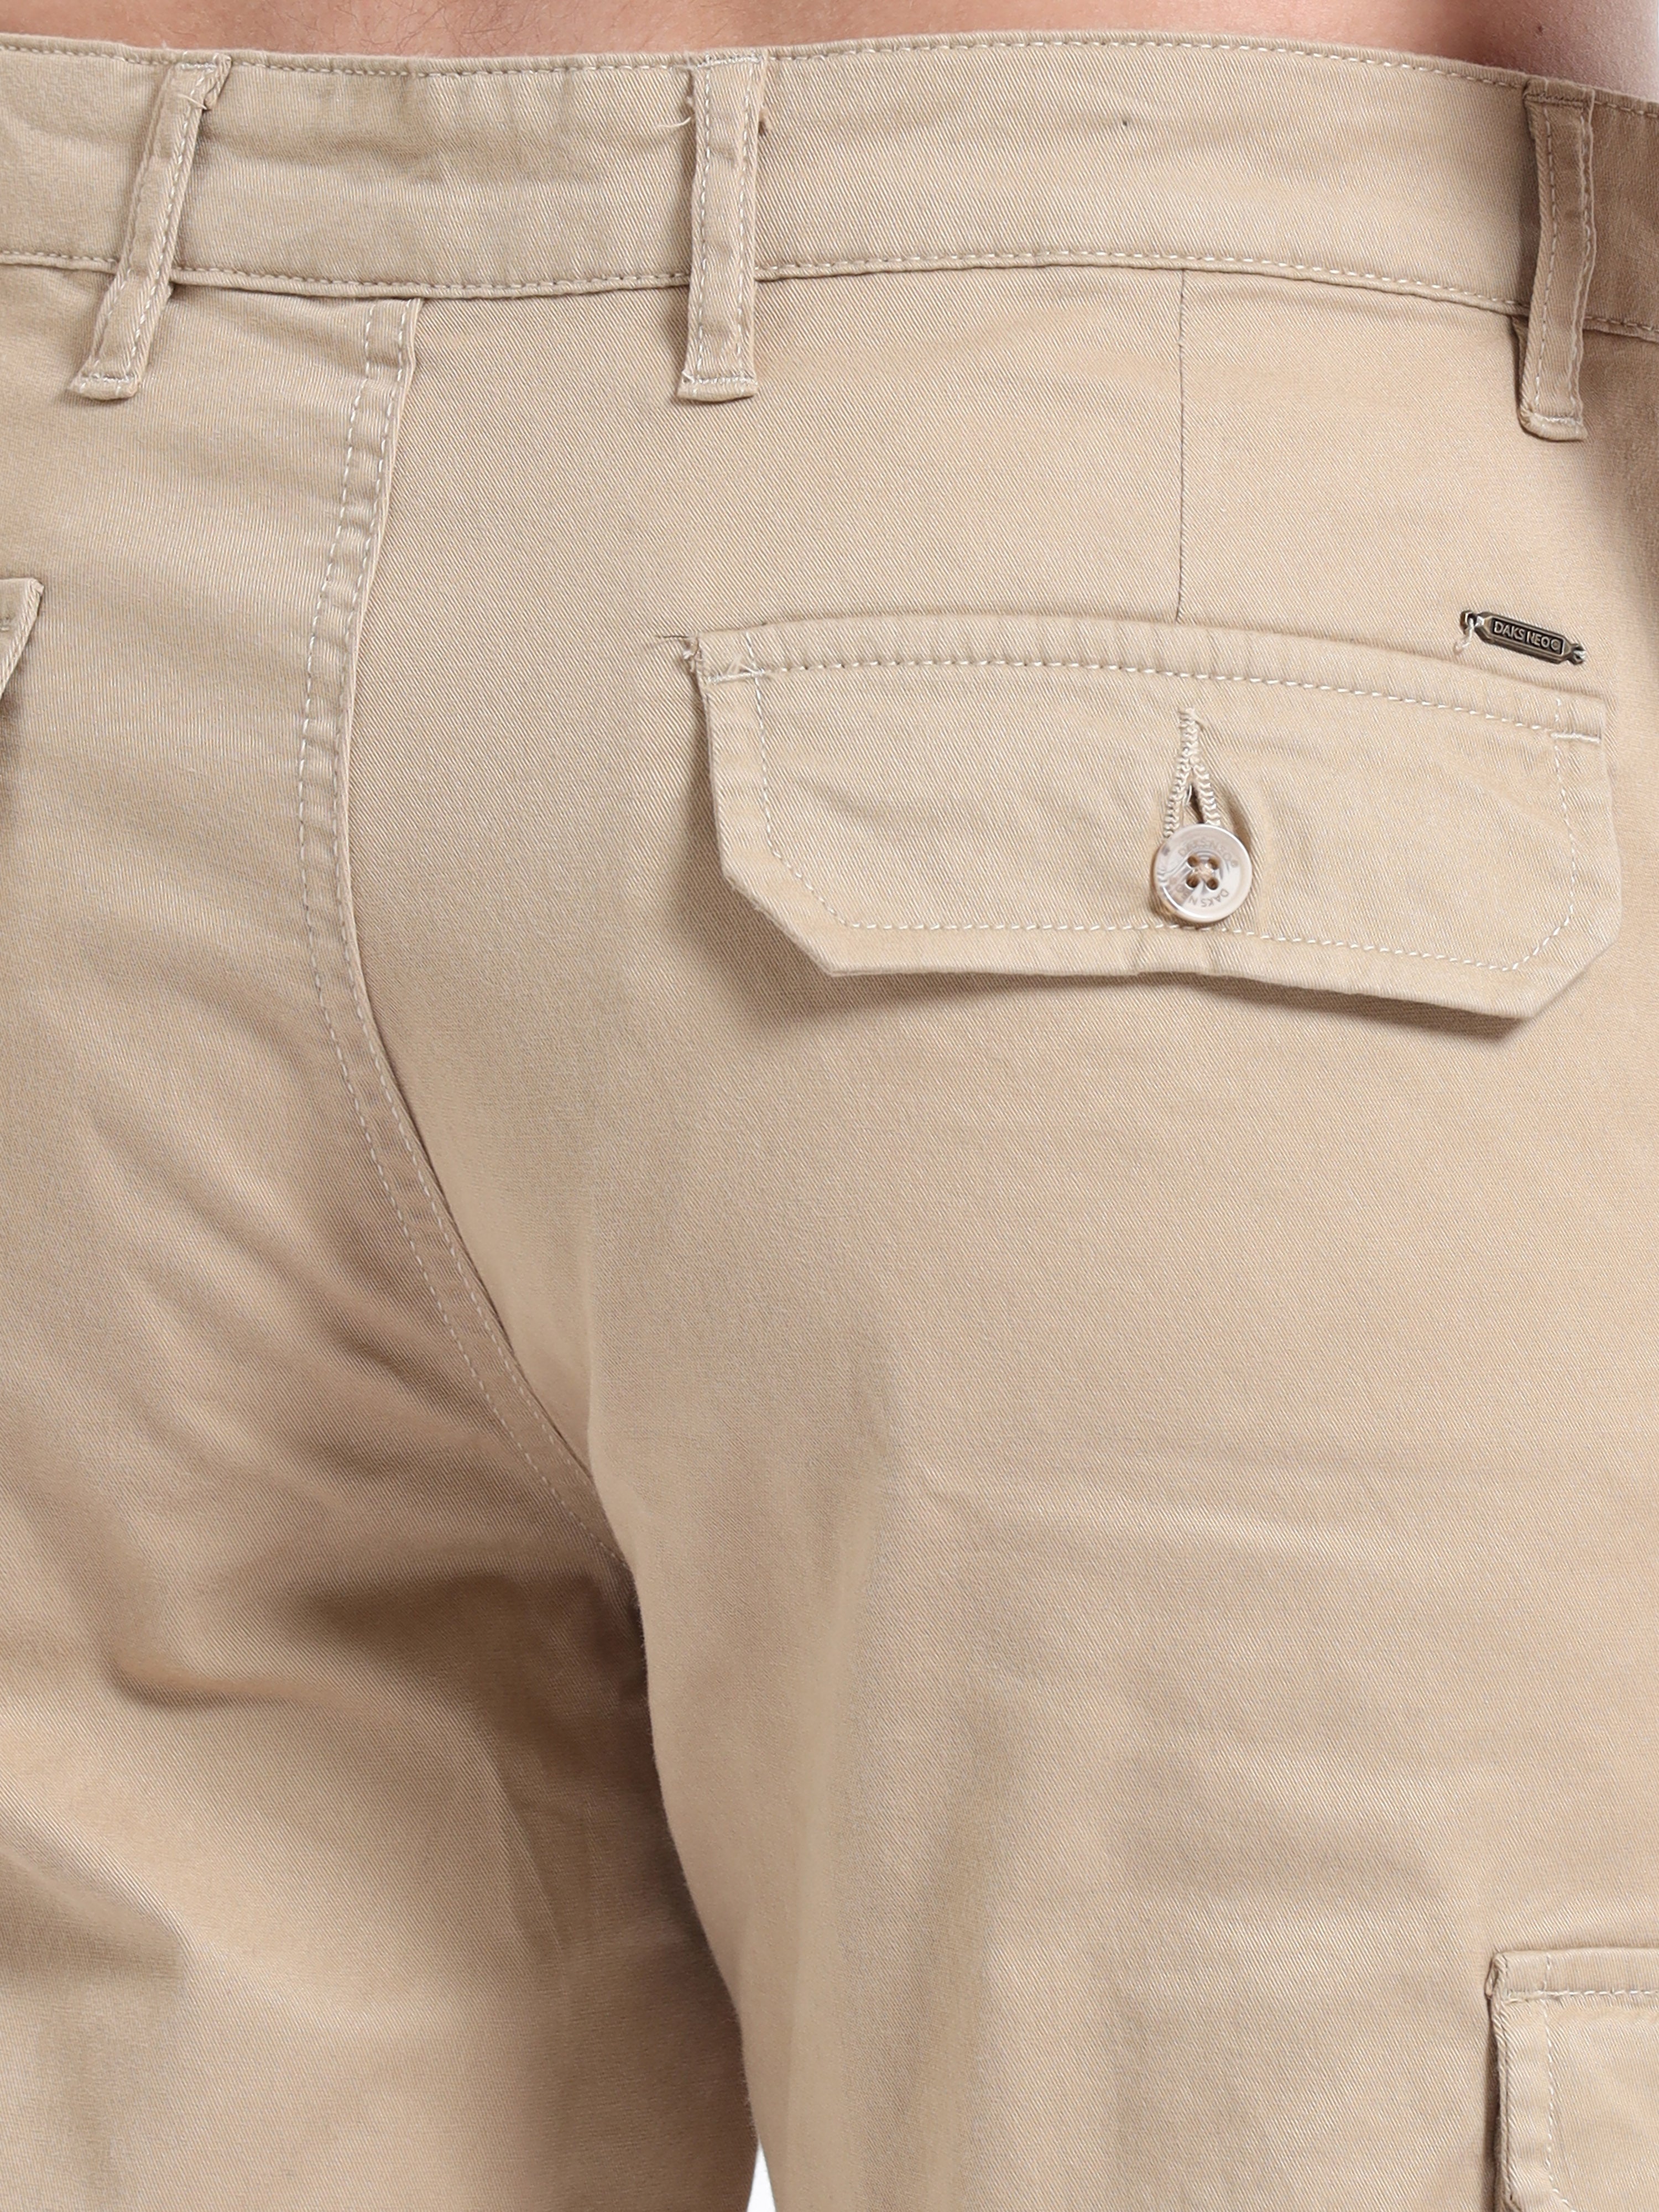 Buy Cool And Comfortable Craze Trout Grey Cargo Pants Men – Badmaash